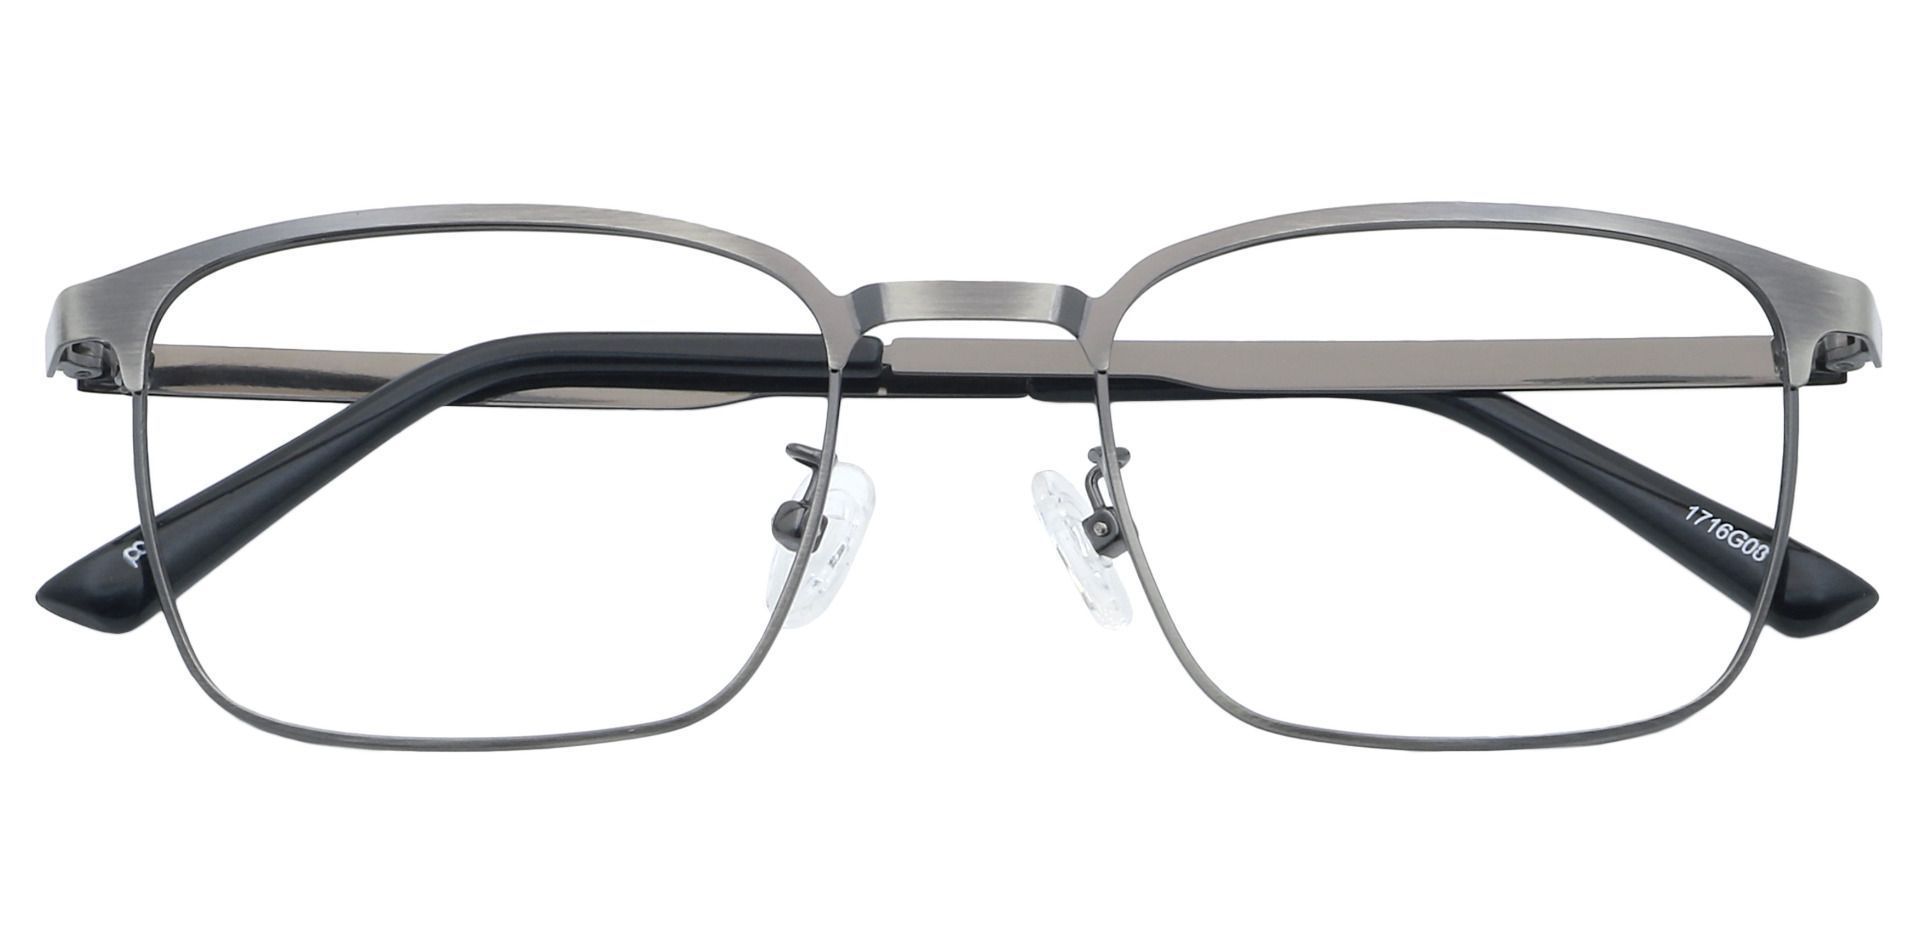 Kingston Square Non-Rx Glasses - Gray